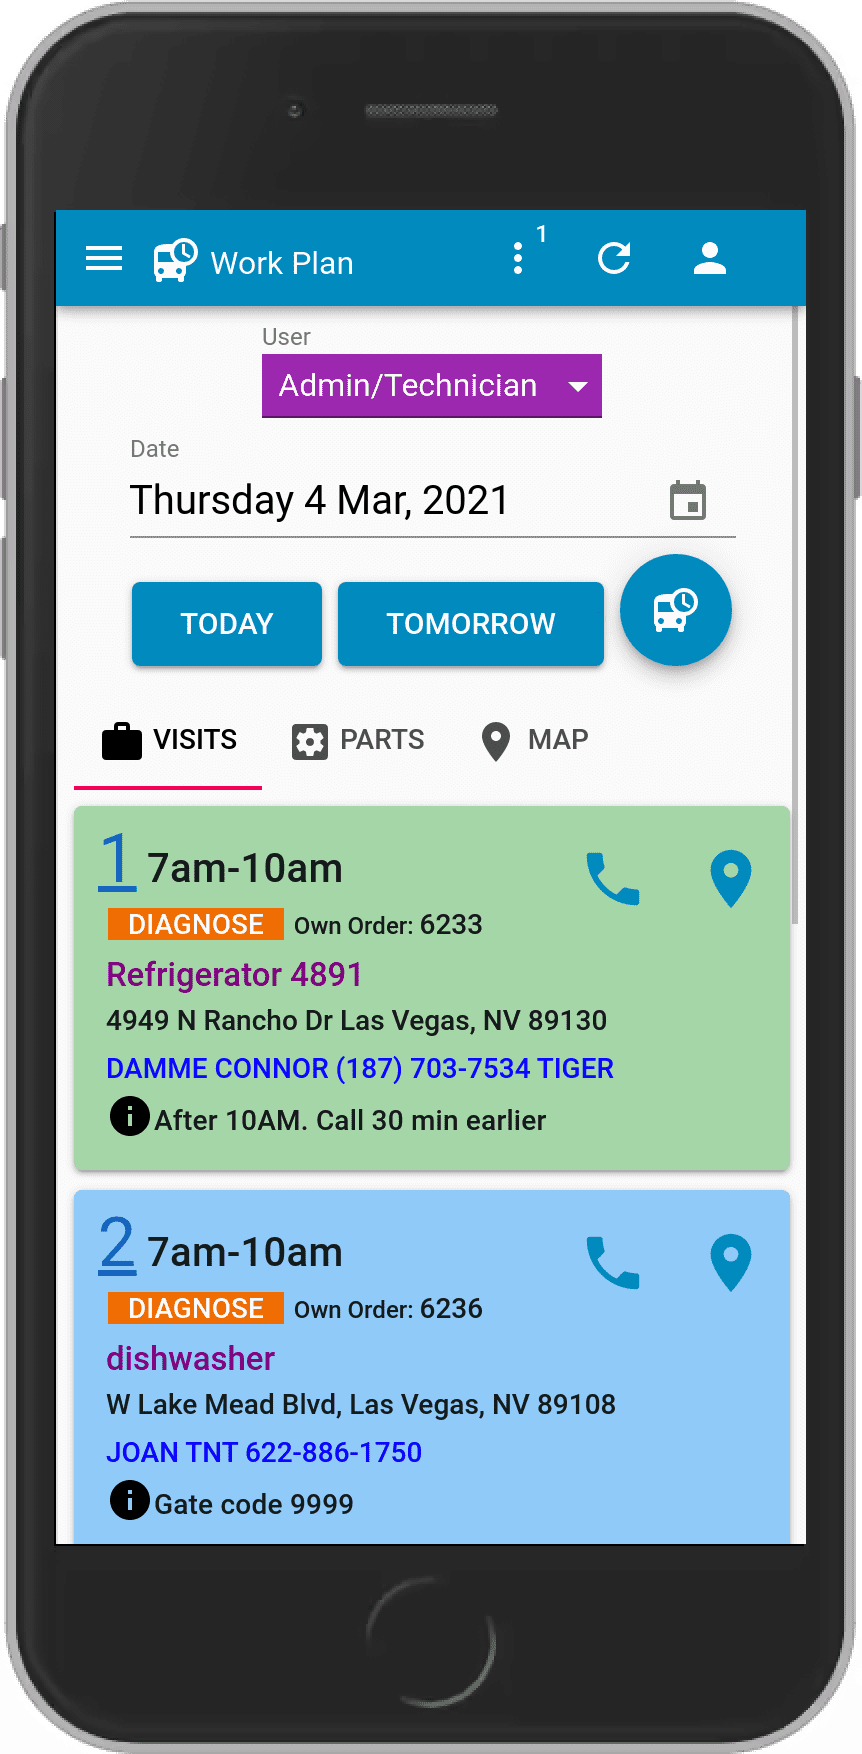 Workplan Screen - Mobile